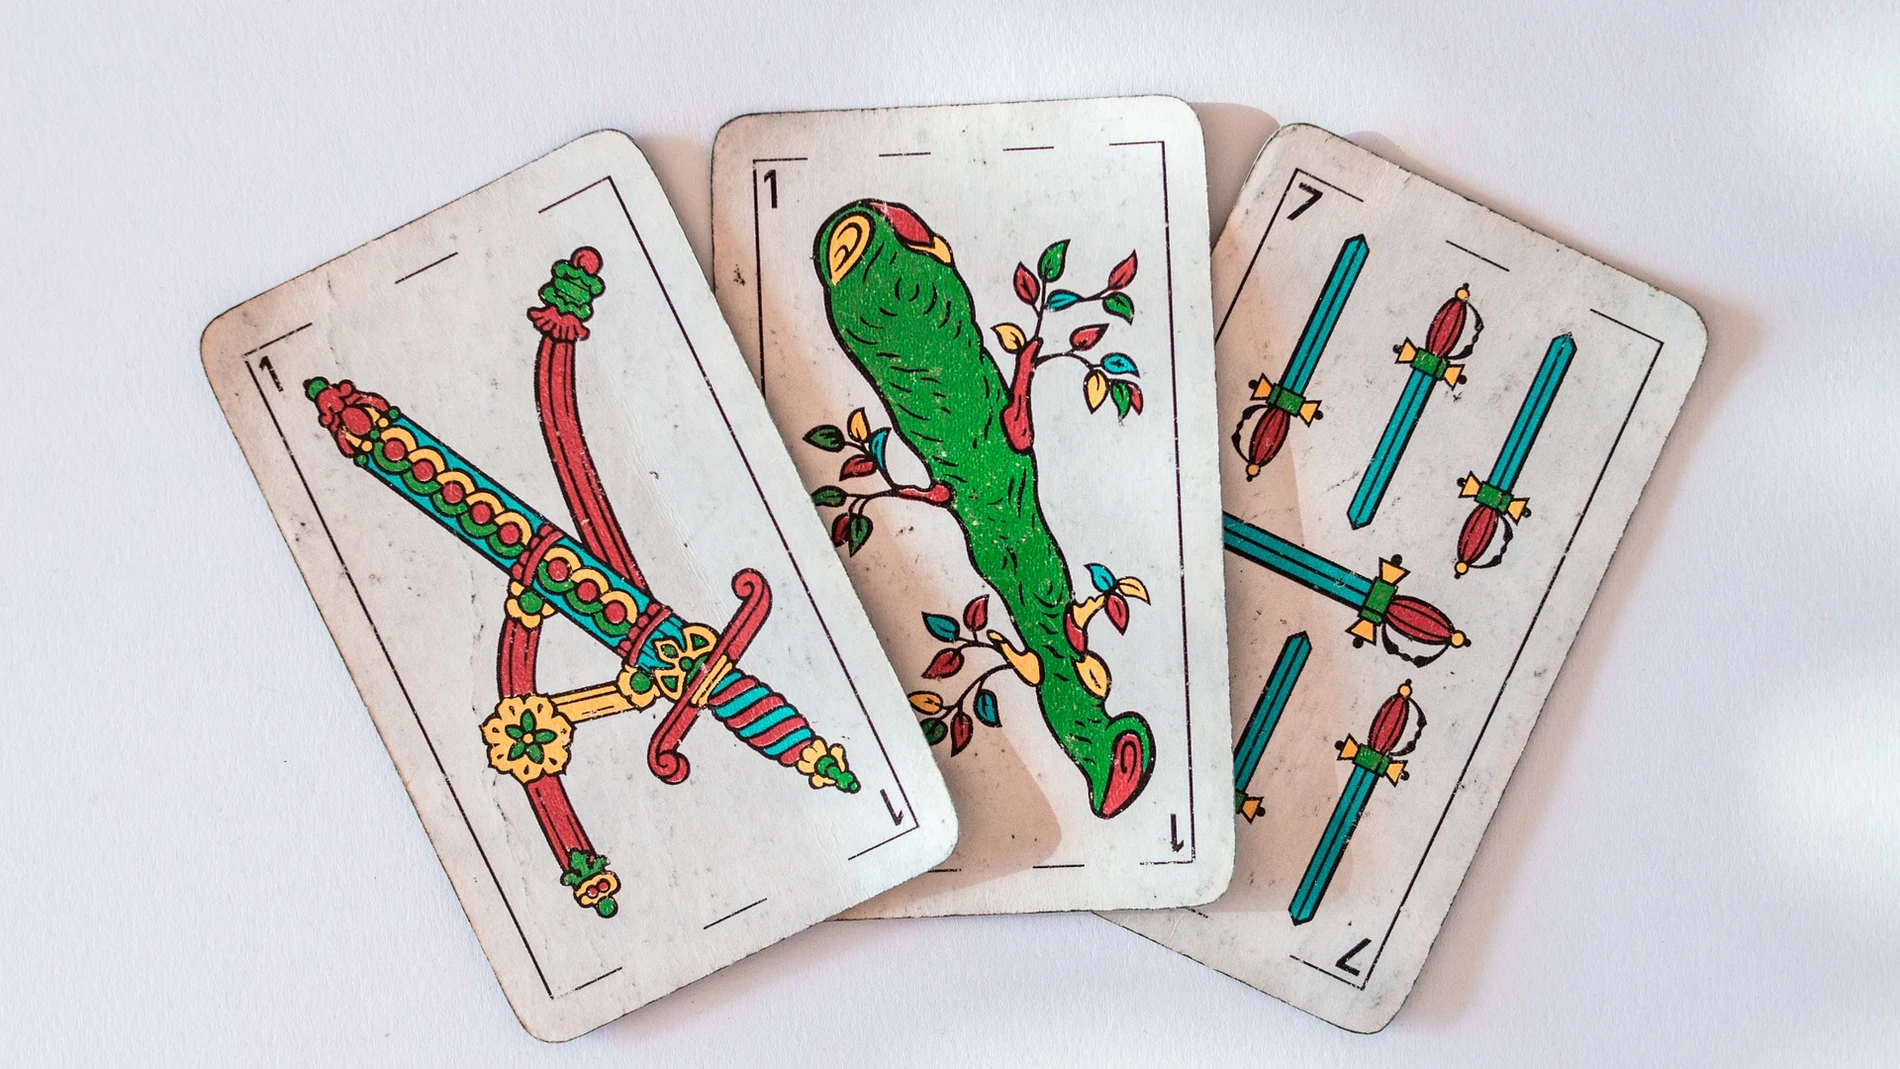 Cómo jugar solitario con las cartas españolas